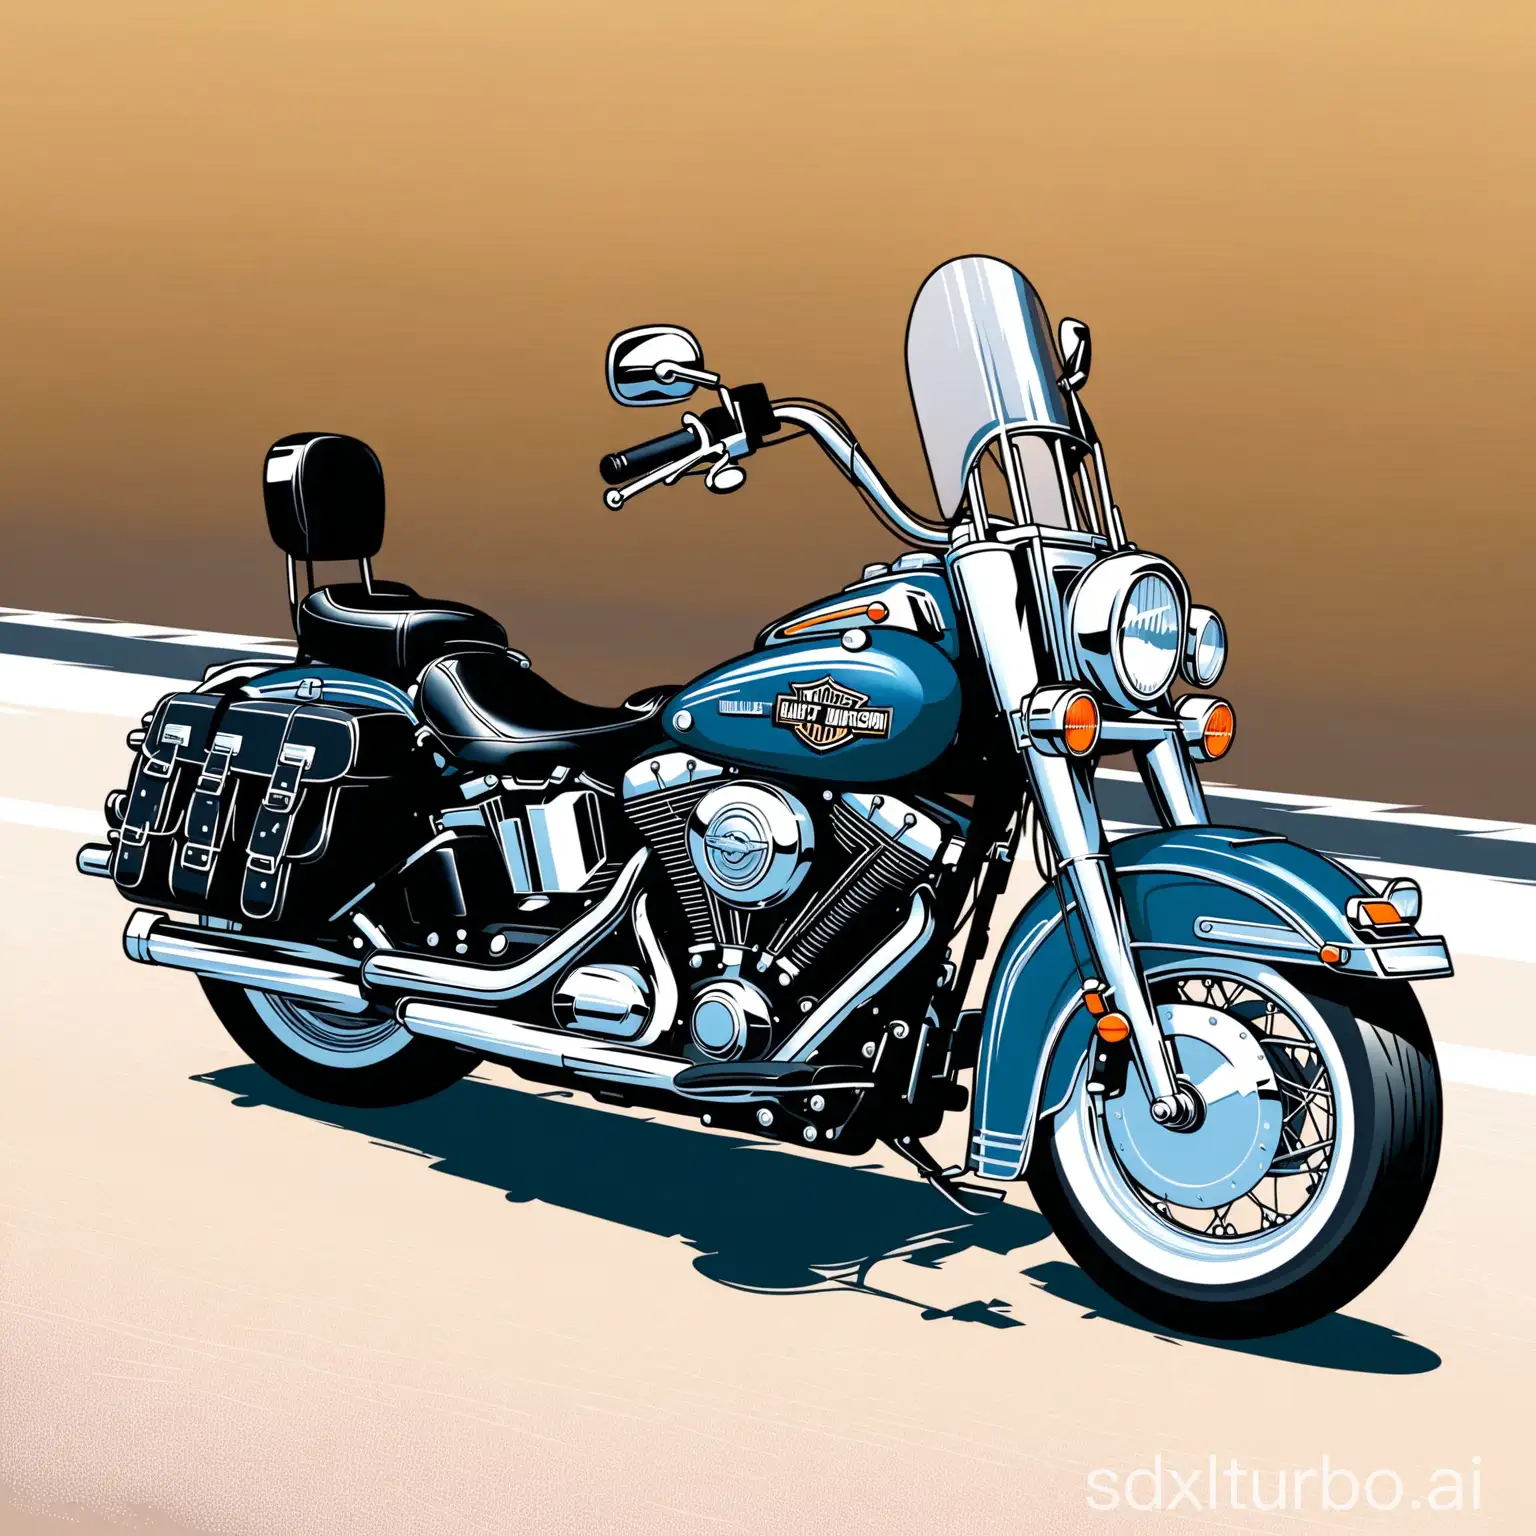 Harley-Davidson-Heritage-2003-GunMetalBlue-Motorcycle-in-Urban-Setting